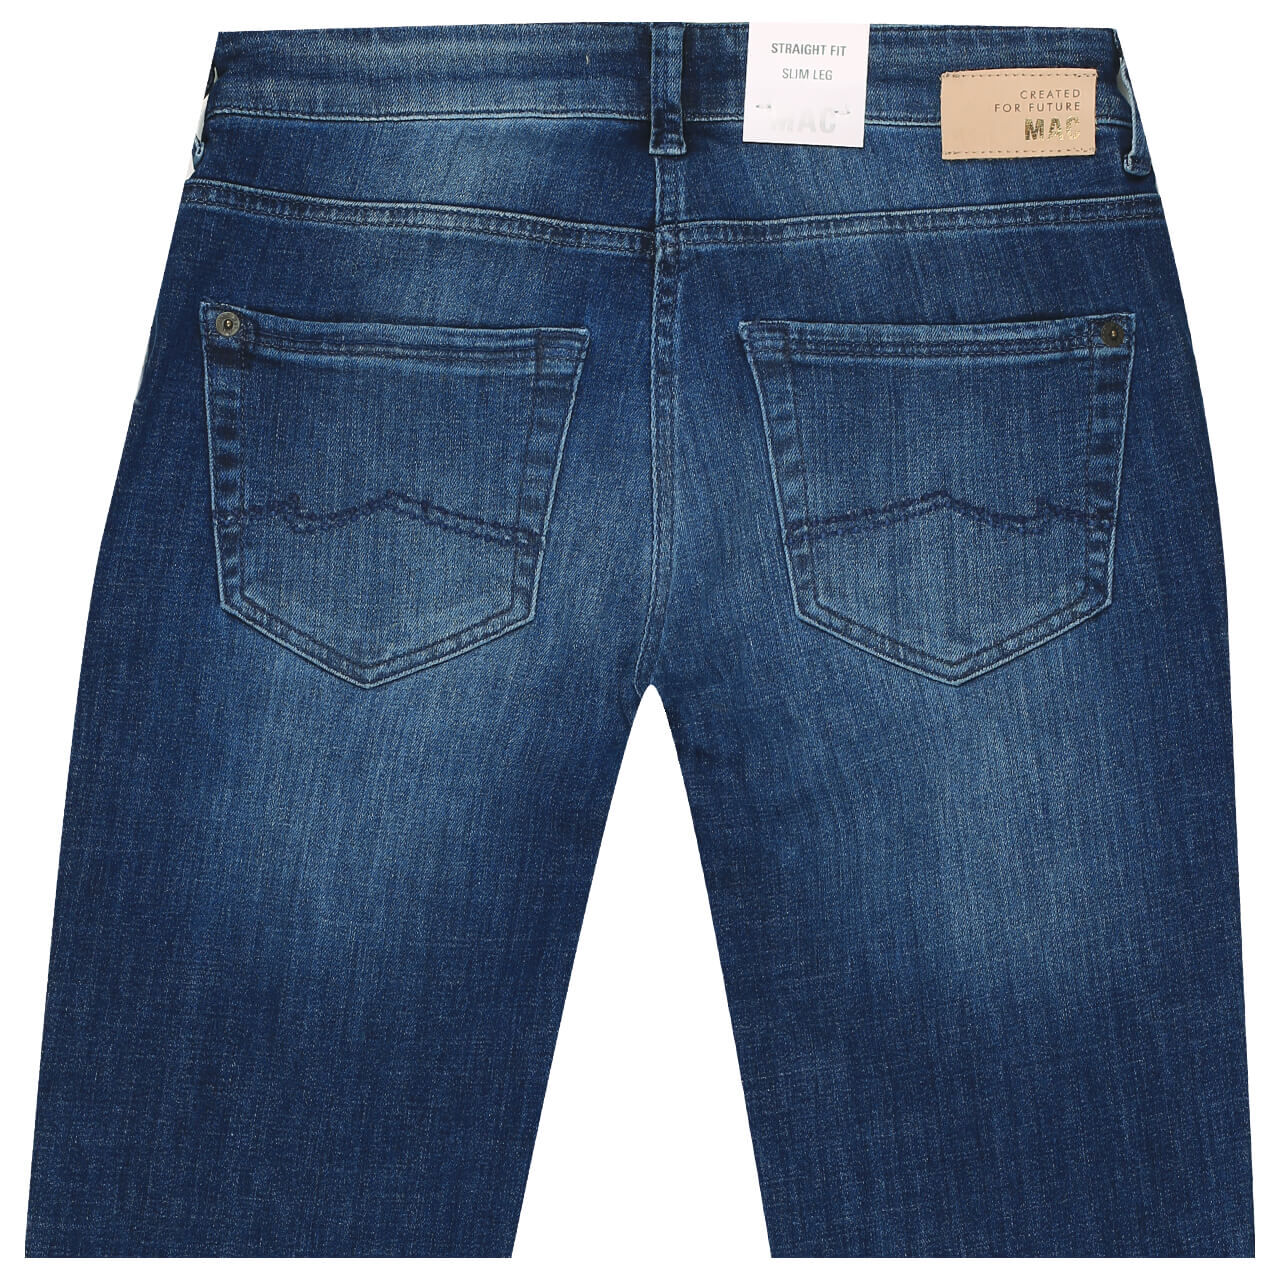 MAC Jeans Carrie Pipe für Damen in Blau verwaschen, FarbNr.: D628